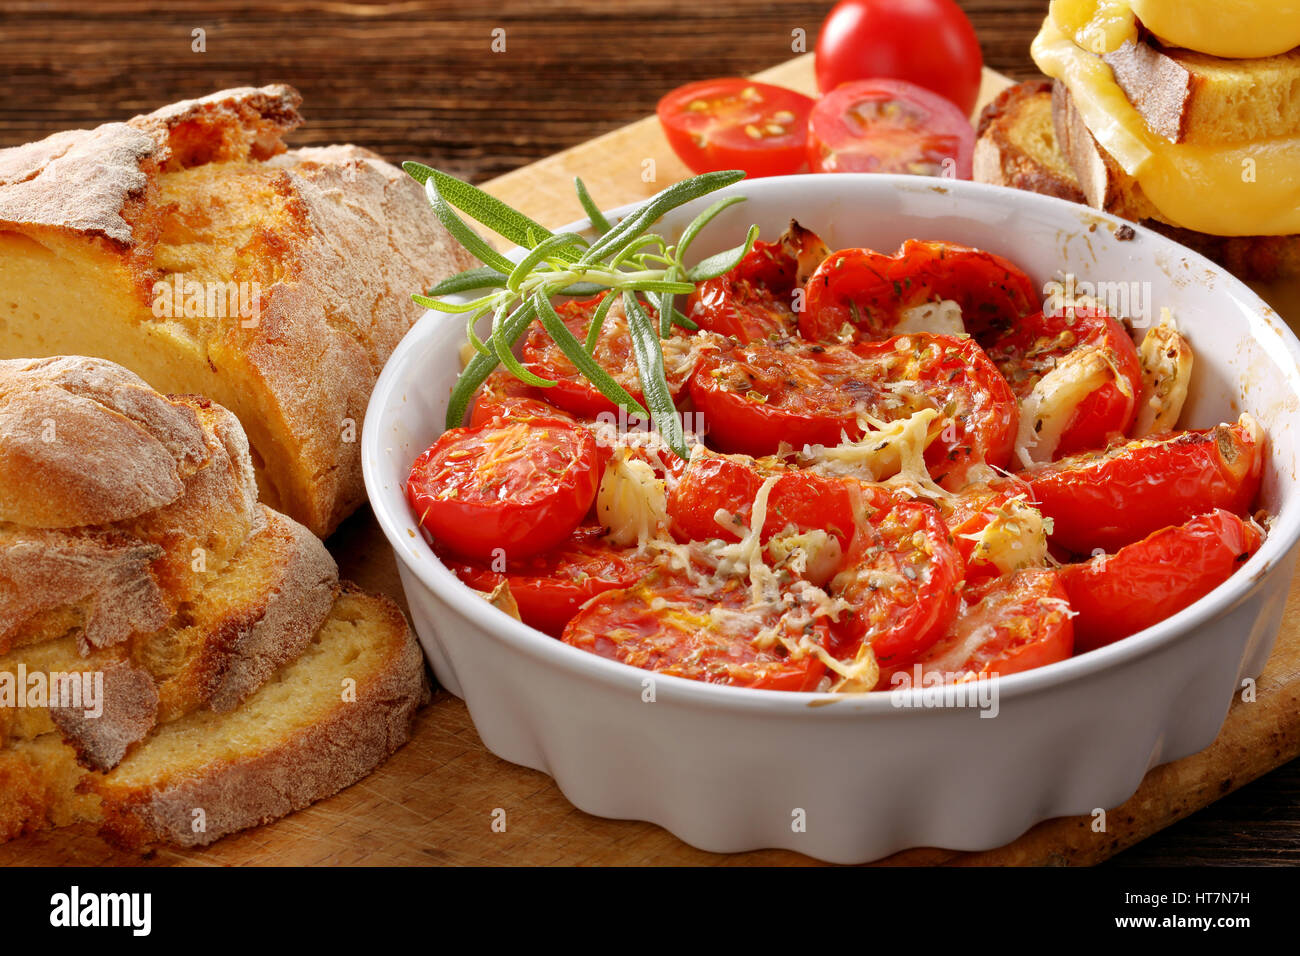 Les tomates cuites, du pain de maïs et des sandwichs au fromage fondu Banque D'Images